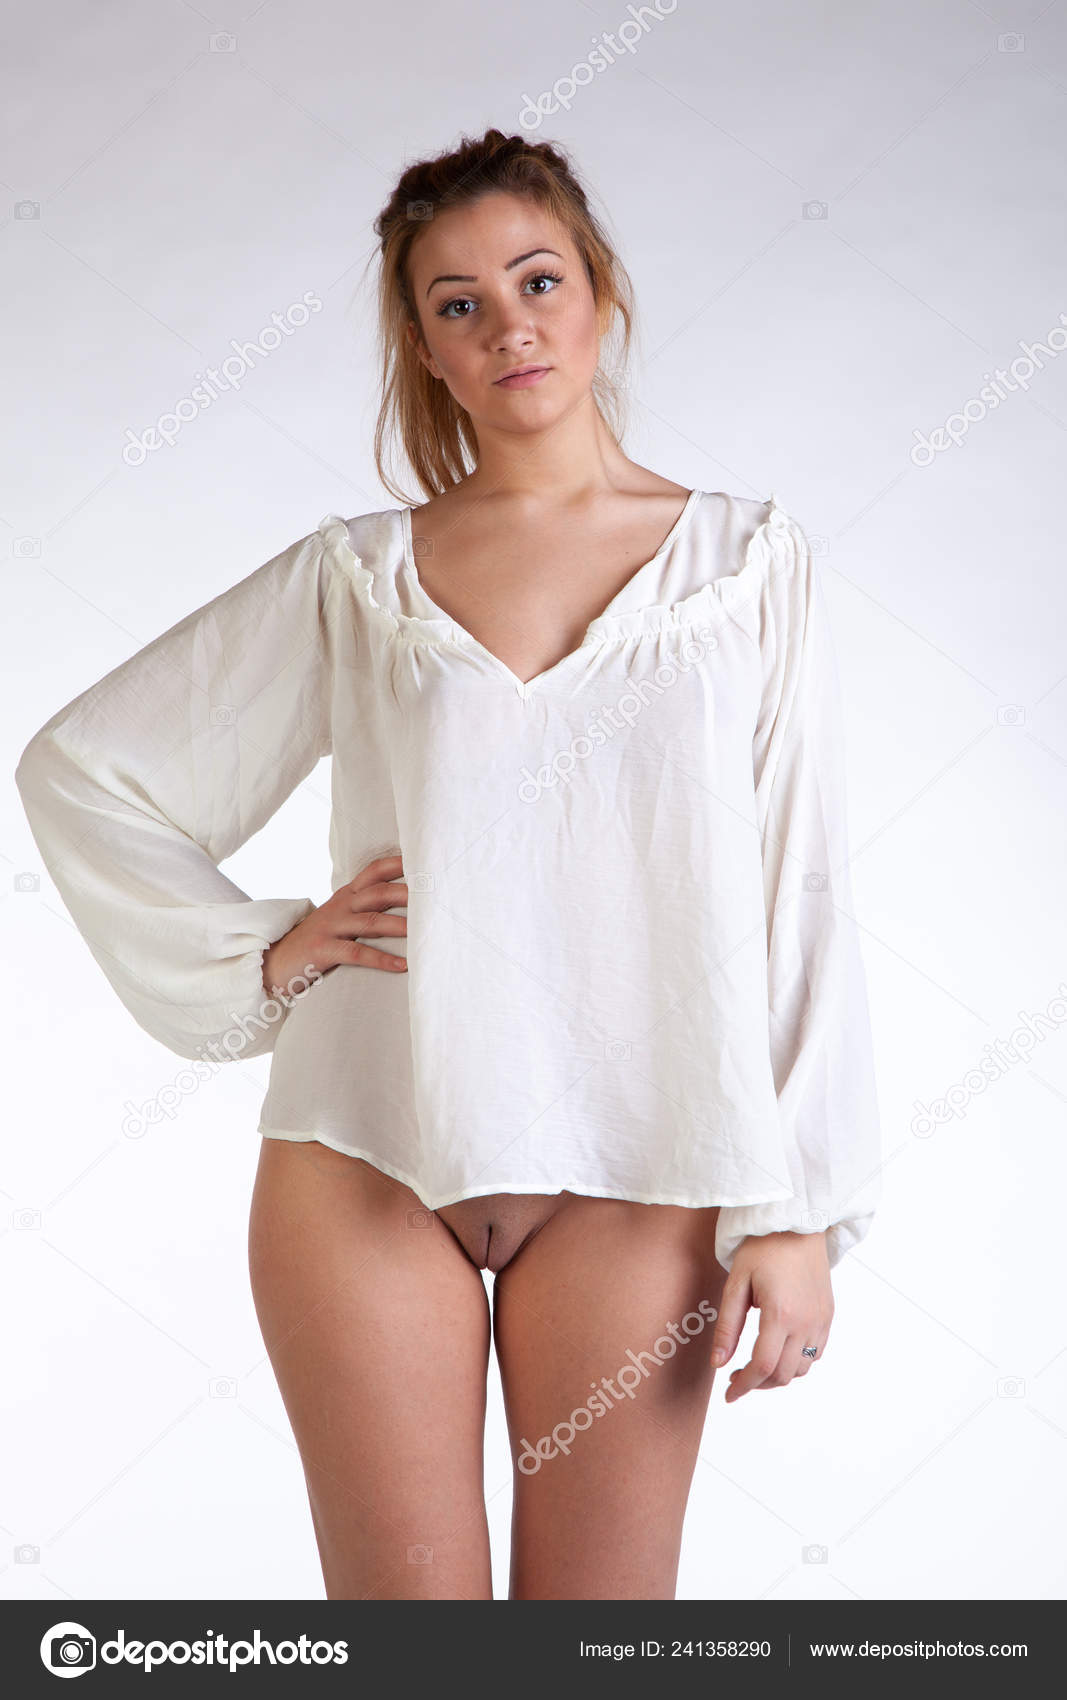 https://st4n.depositphotos.com/10086424/24135/i/1600/depositphotos_241358290-stock-photo-young-beautiful-girl-posing-nude.jpg